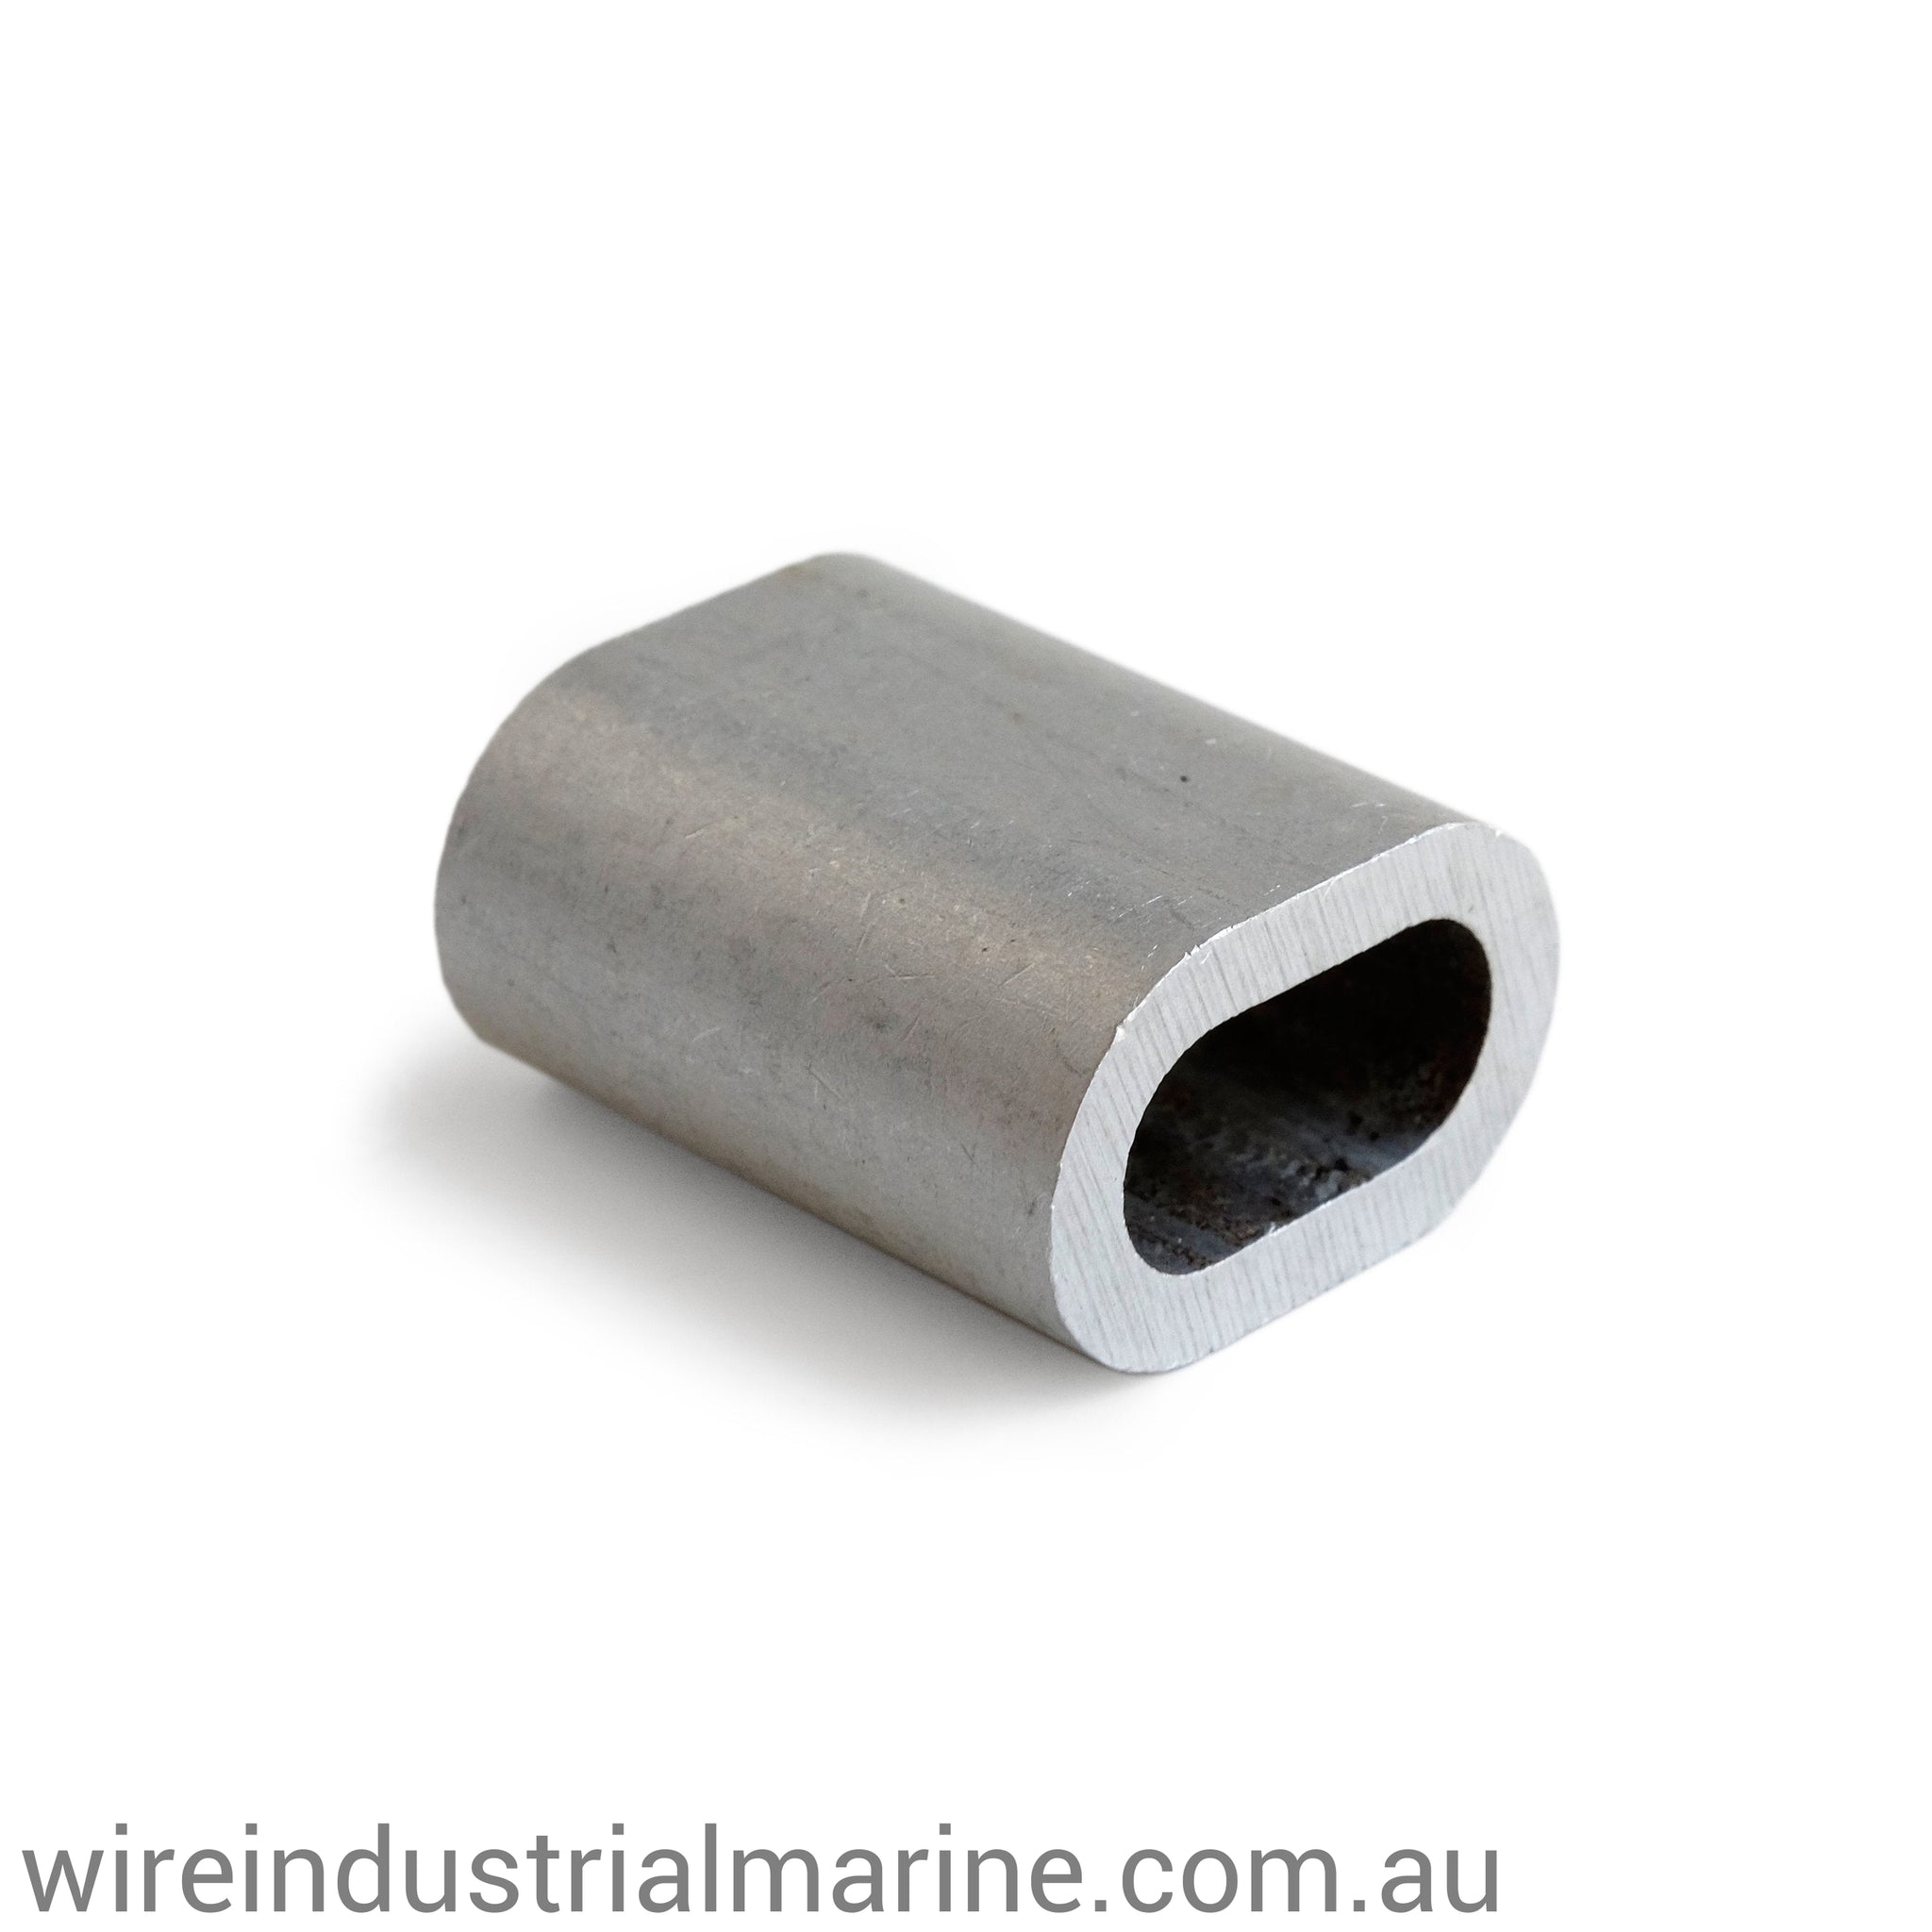 6.5mm ALLOY-DIN Code machine press ferrule for galvanised wire-wireindustrialmarine